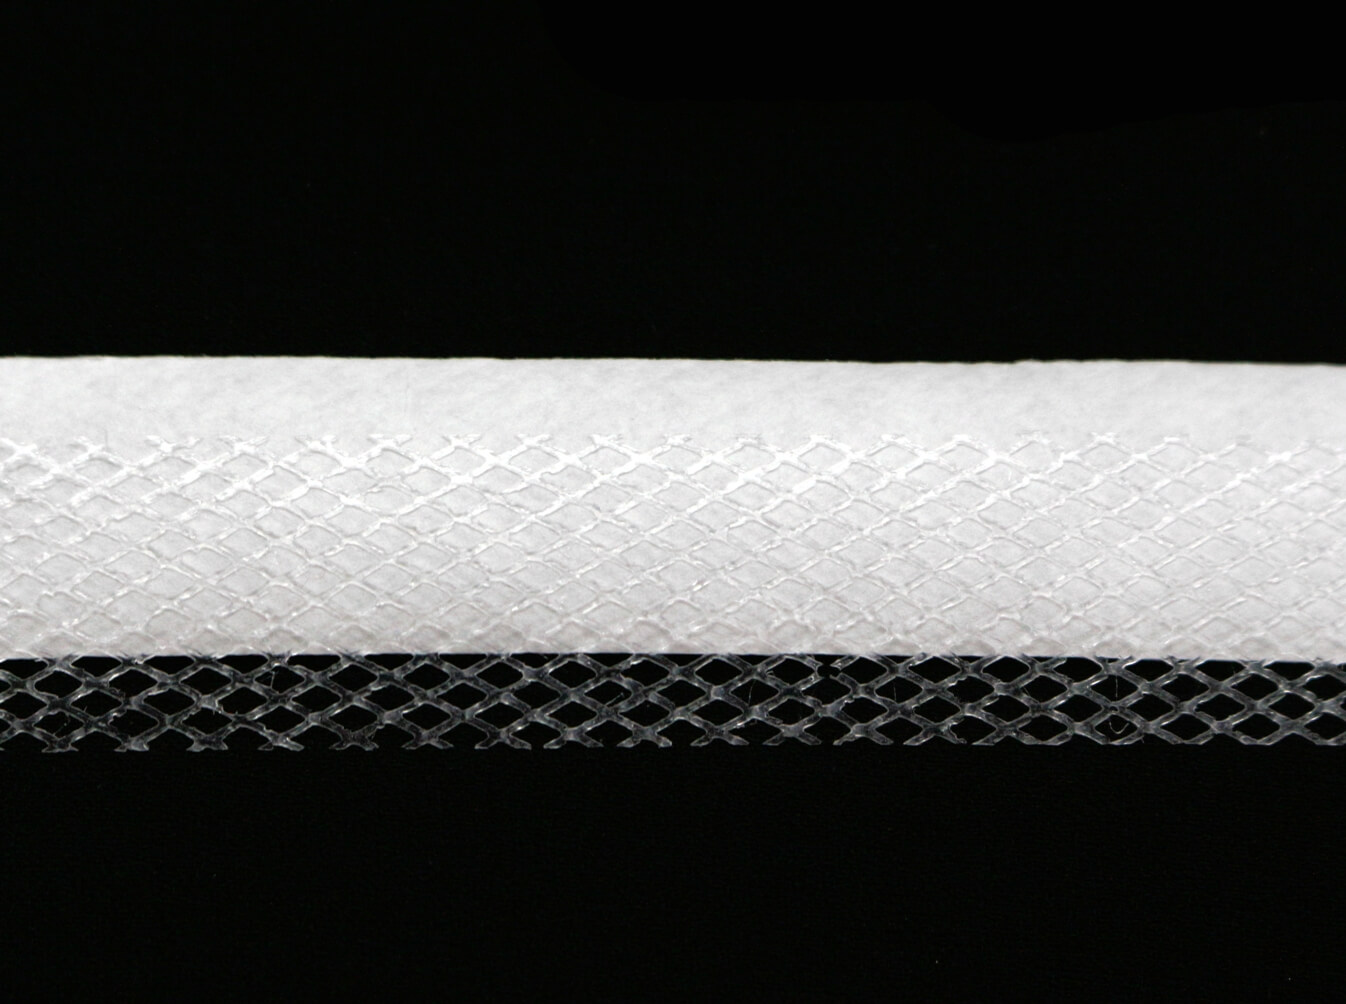 Сетка клеевая на бумаге 2 см, цвет Белый